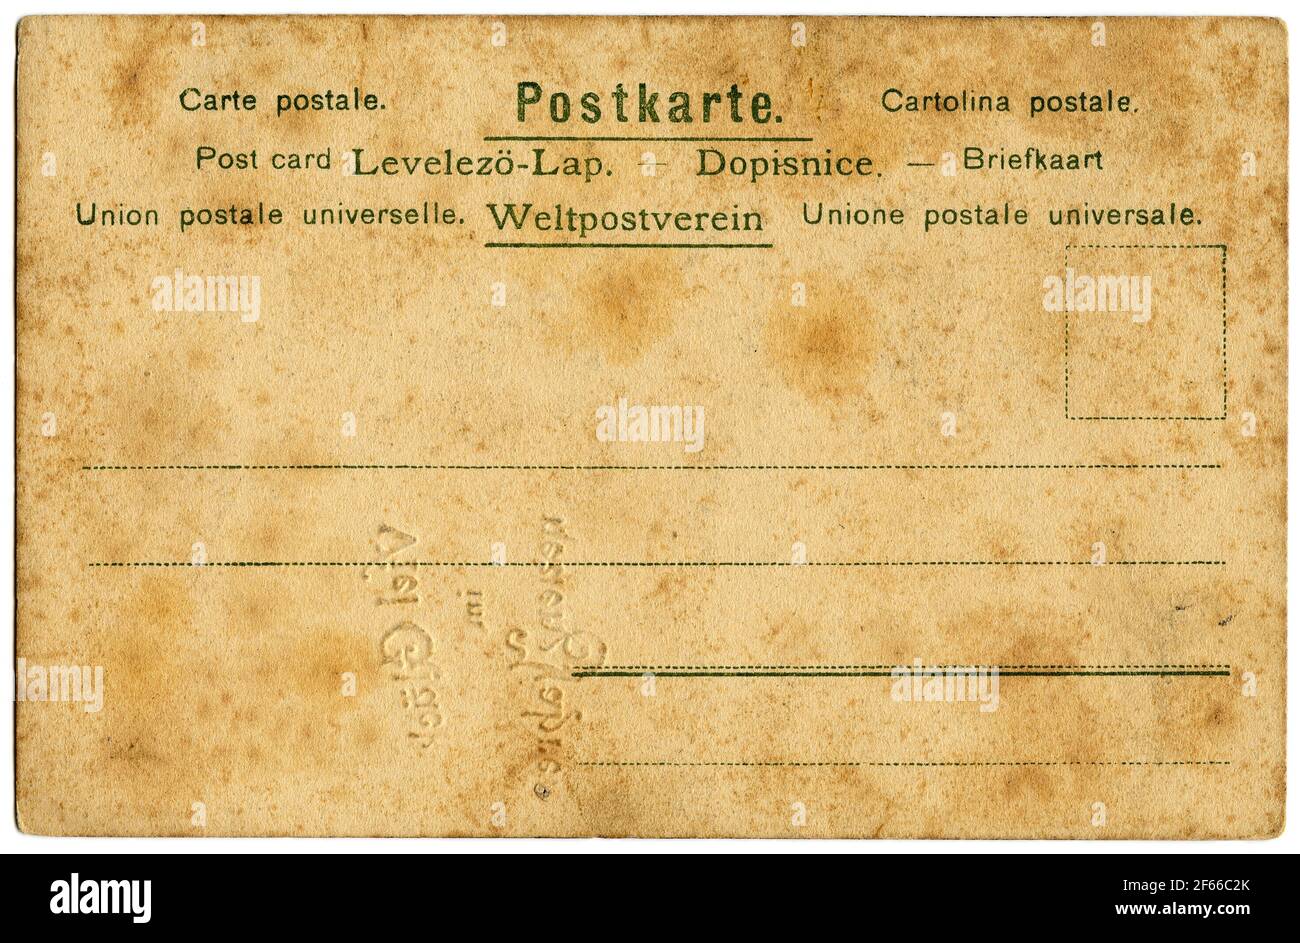 Carte postale antique en papier coloré avec des avis dans diverses langues Banque D'Images